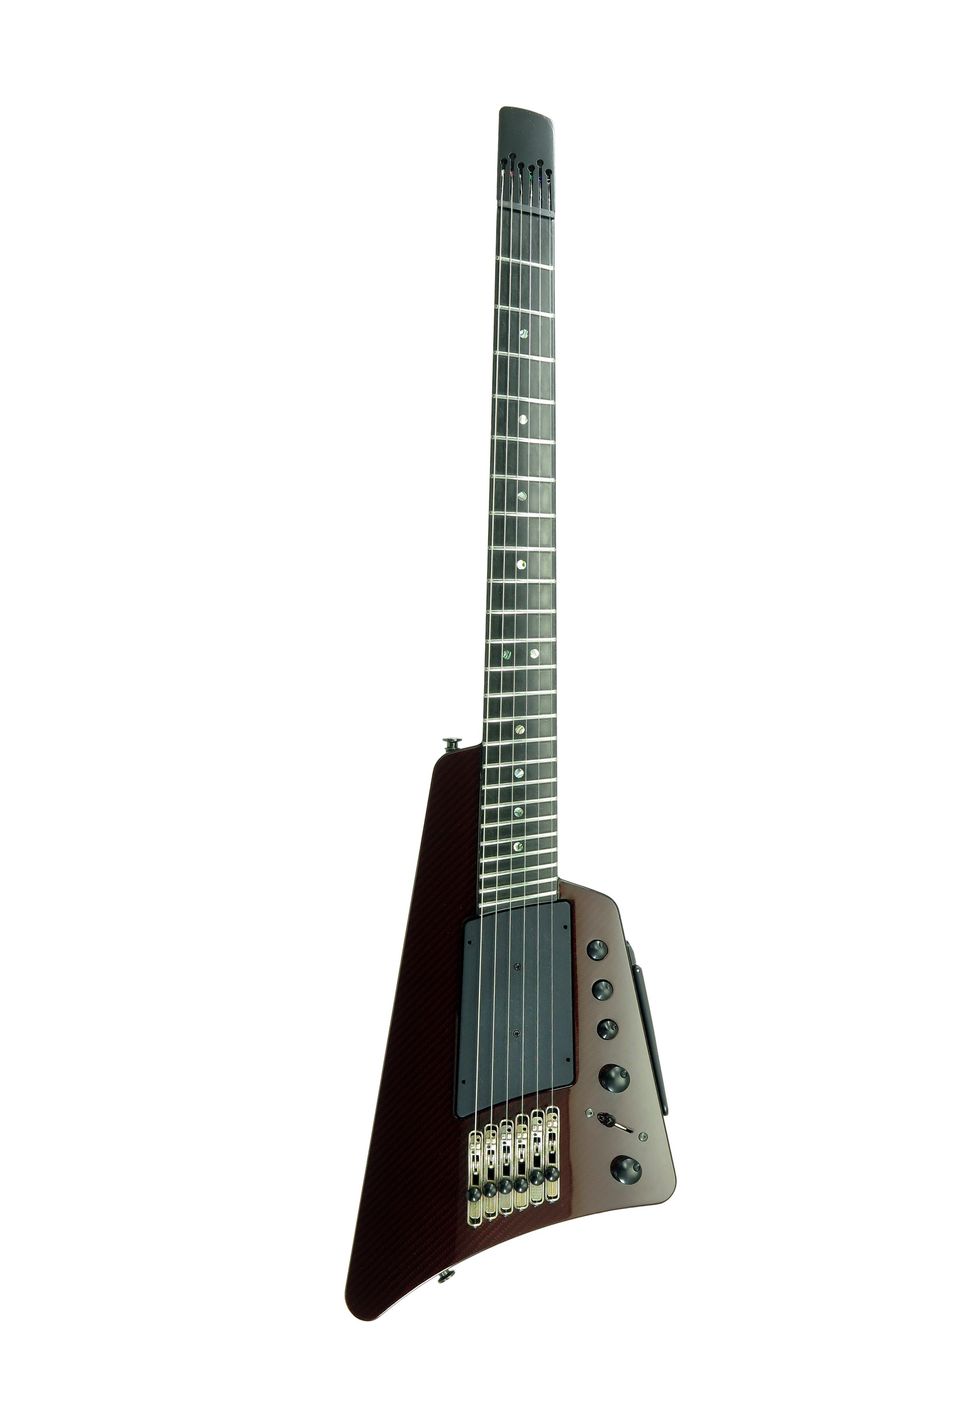 Steinberger guitar